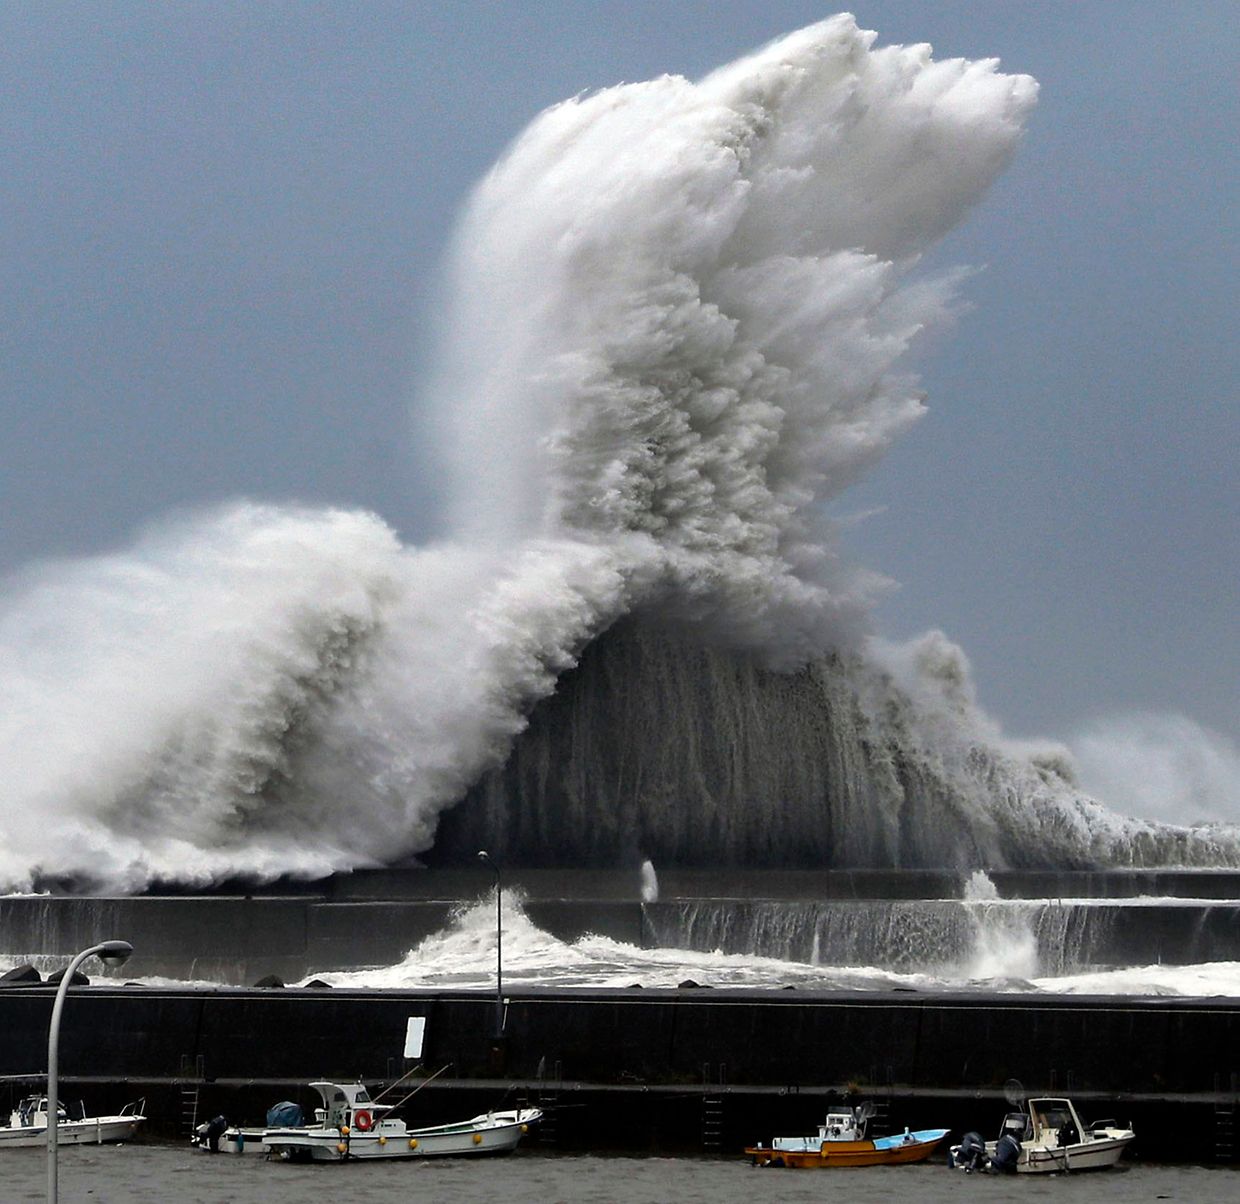 Hohe Wellen brechen an Wellenbrechern in einem Hafen von Aki.